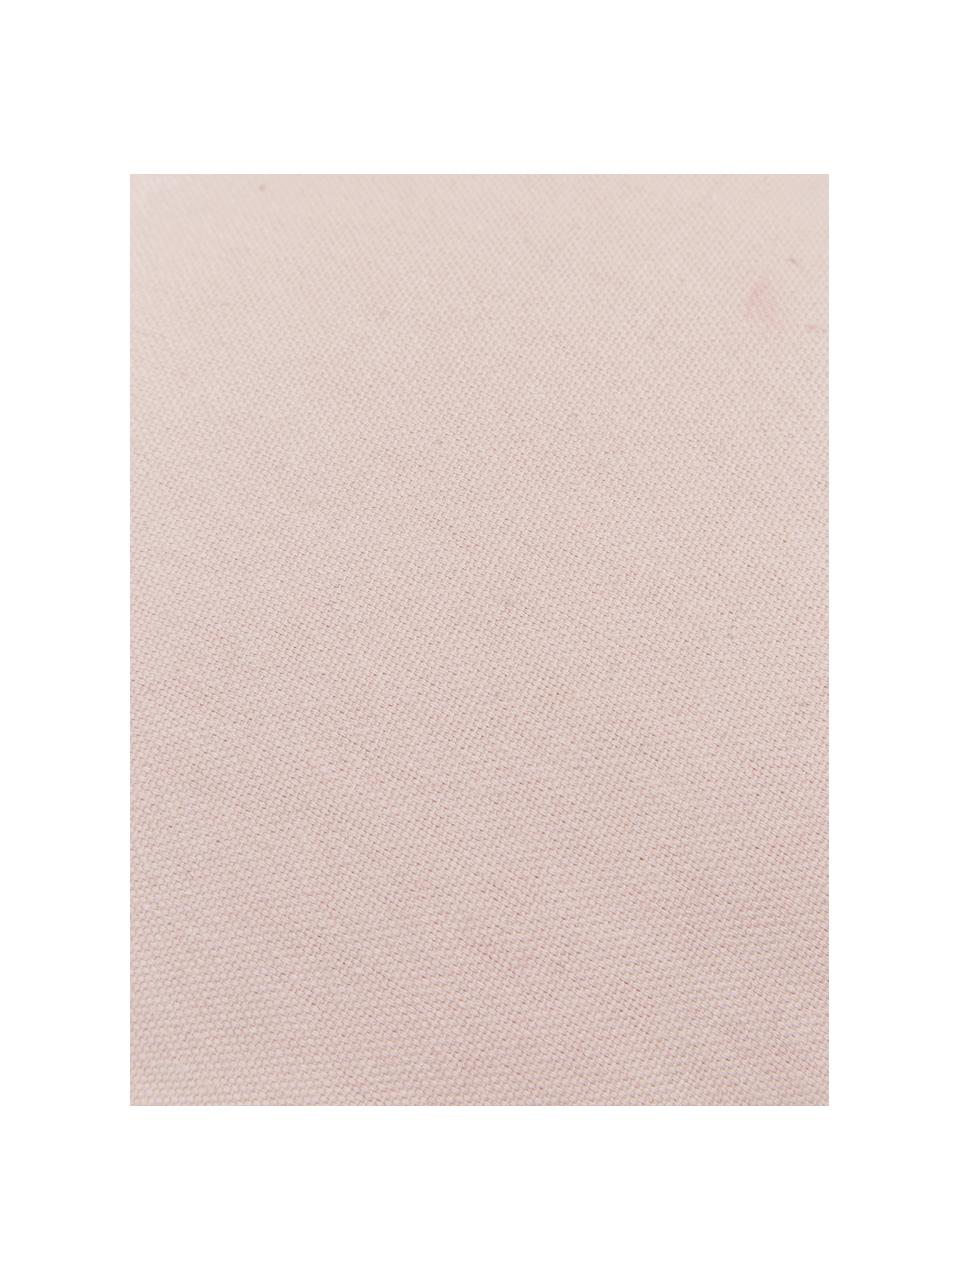 Cuscino tesuto a maglia grossa Sparkle, Rivestimento: 100% cotone, Rosa, Larg. 45 x Lung. 45 cm